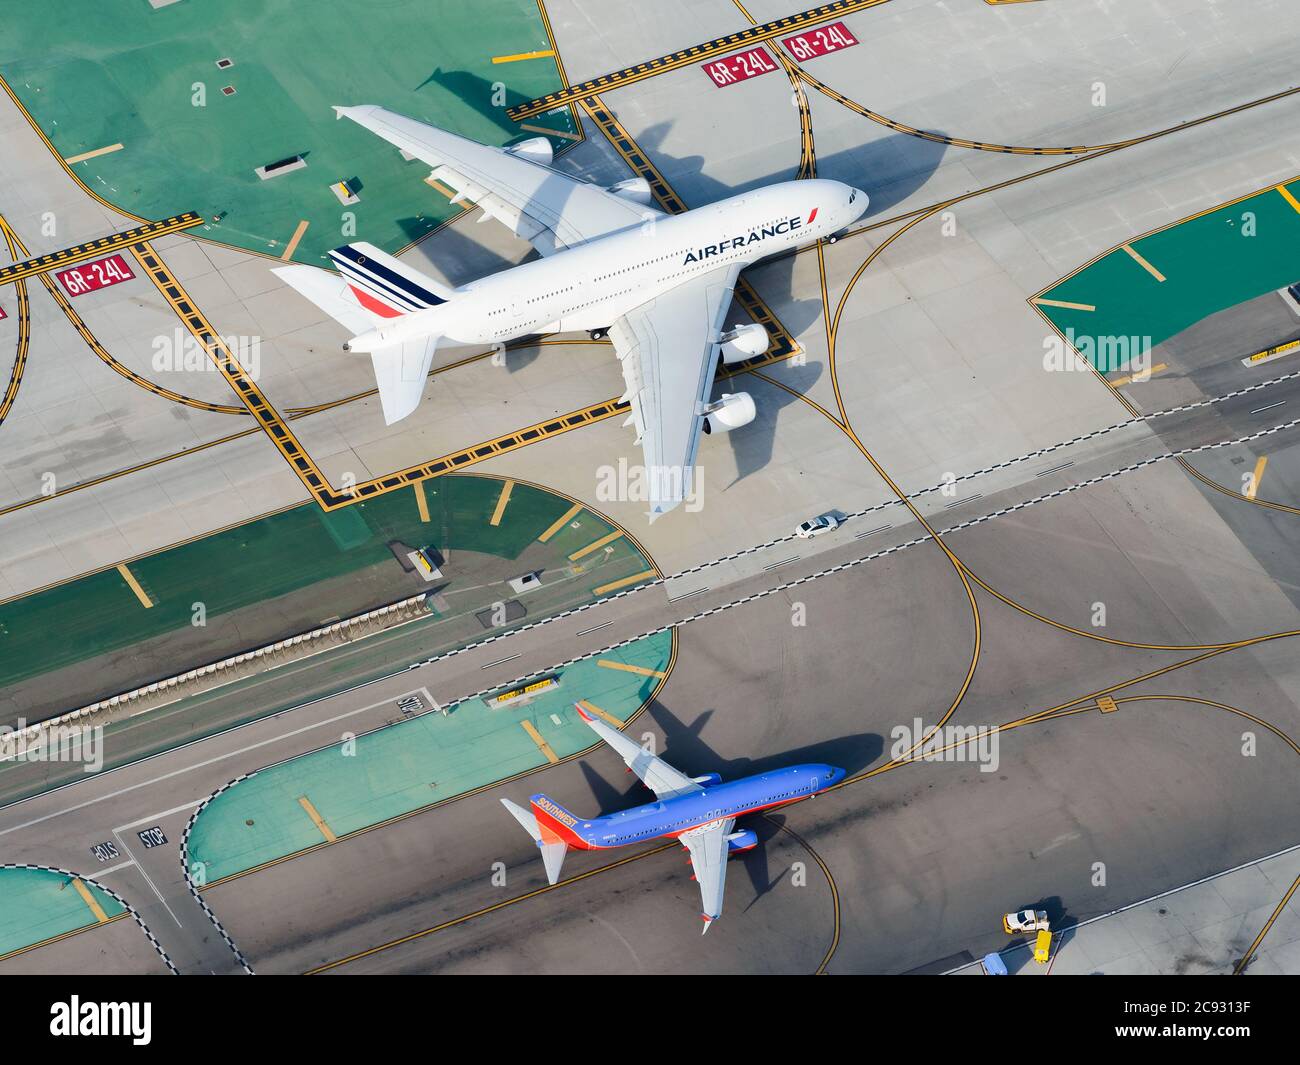 Confronto delle dimensioni della vista aerea degli aeromobili Airbus e Boeing. Enorme Air France Airbus A380 e piccolo Southwest Boeing 737 che tassano all'aeroporto di Los Angeles LAX. Foto Stock